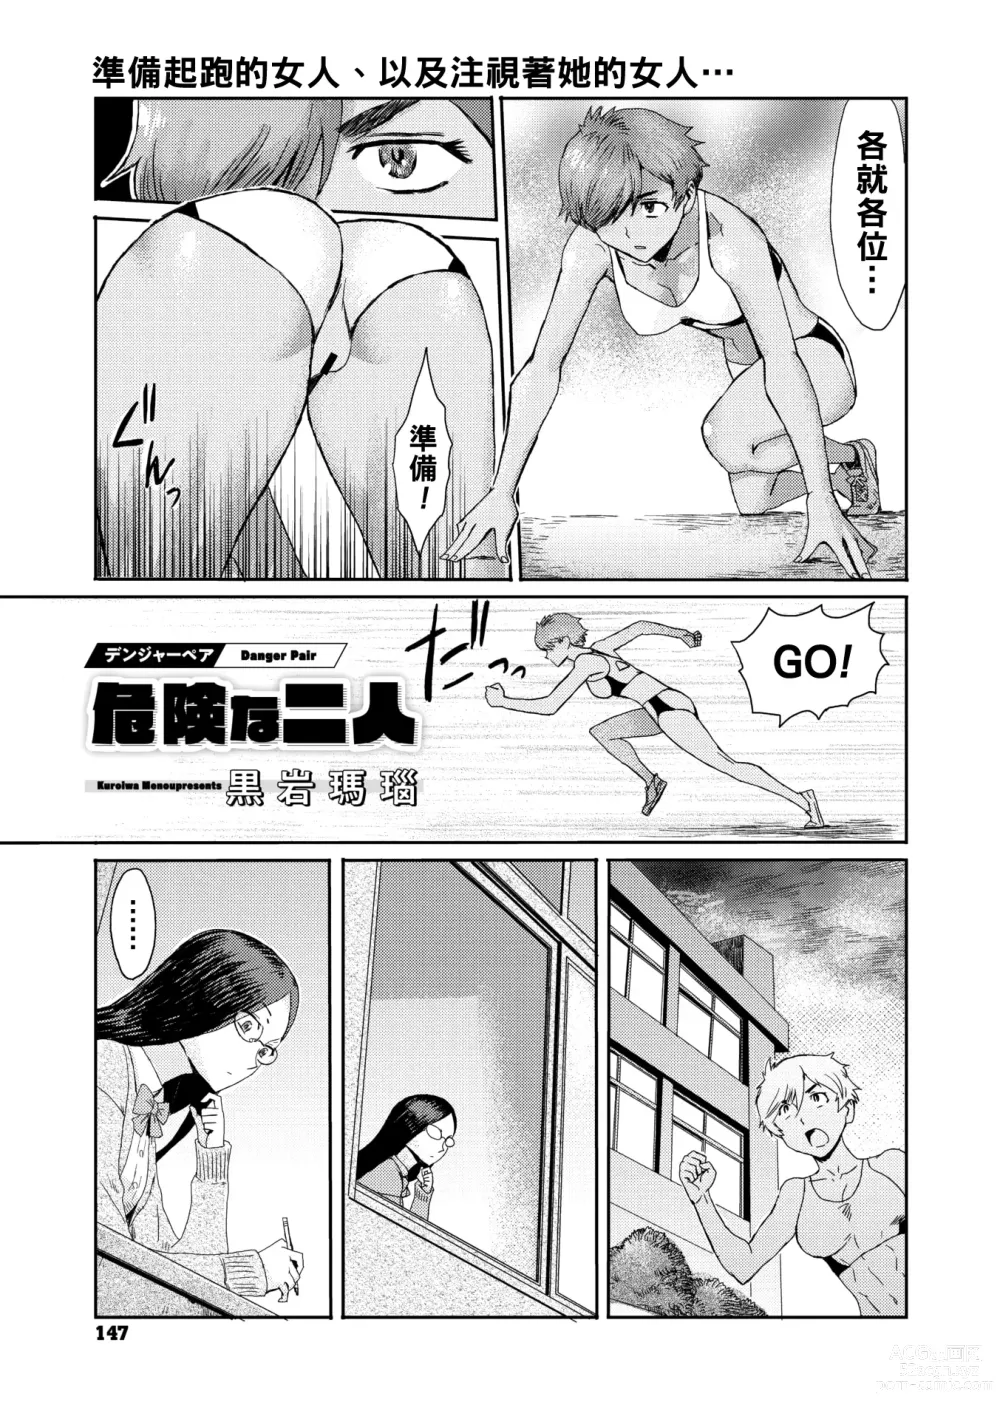 Page 1 of manga Danger Pair